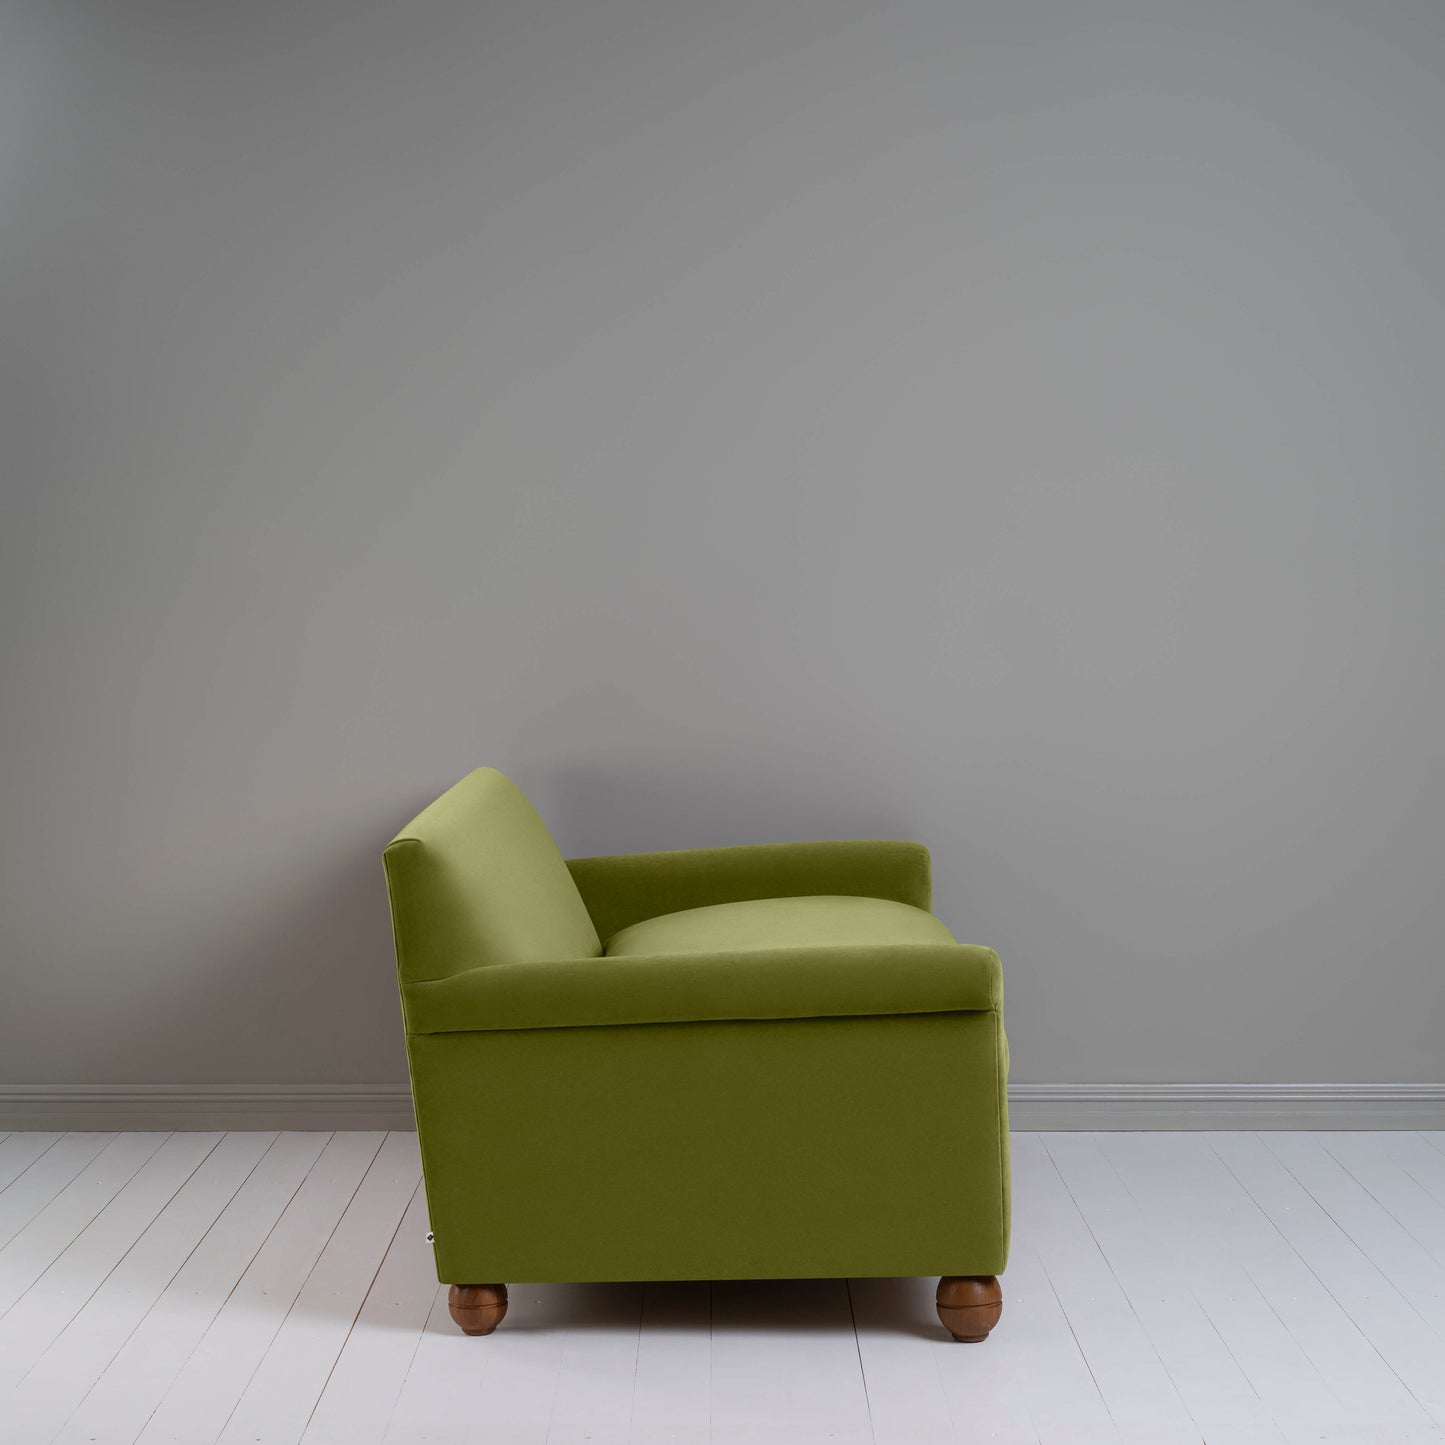 Idler 3 Seater Sofa in Intelligent Velvet Lawn